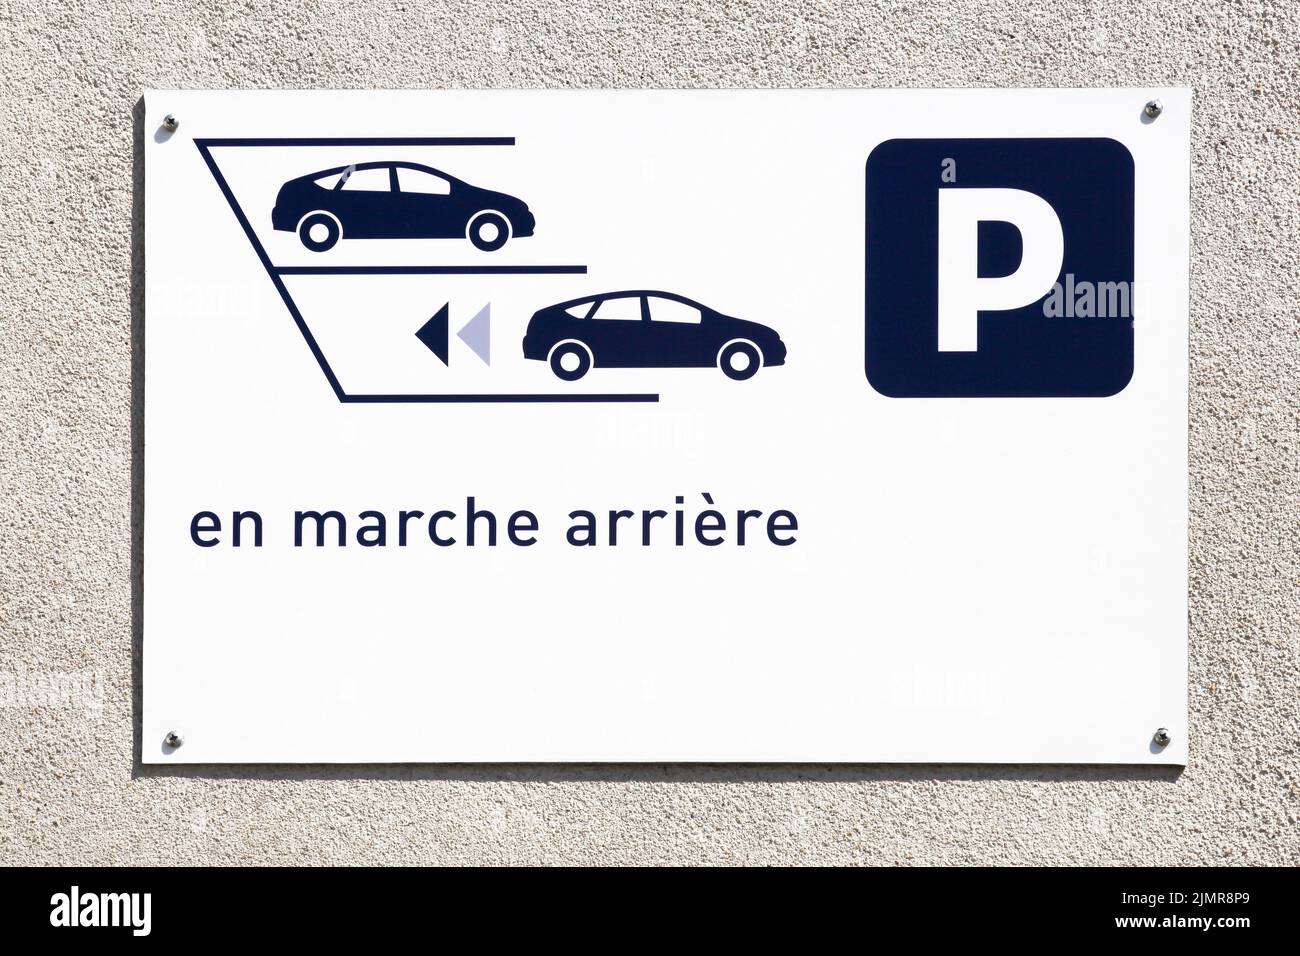 Parking inversé seulement sur un mur appelé stationner en marche arrière en langue française Banque D'Images